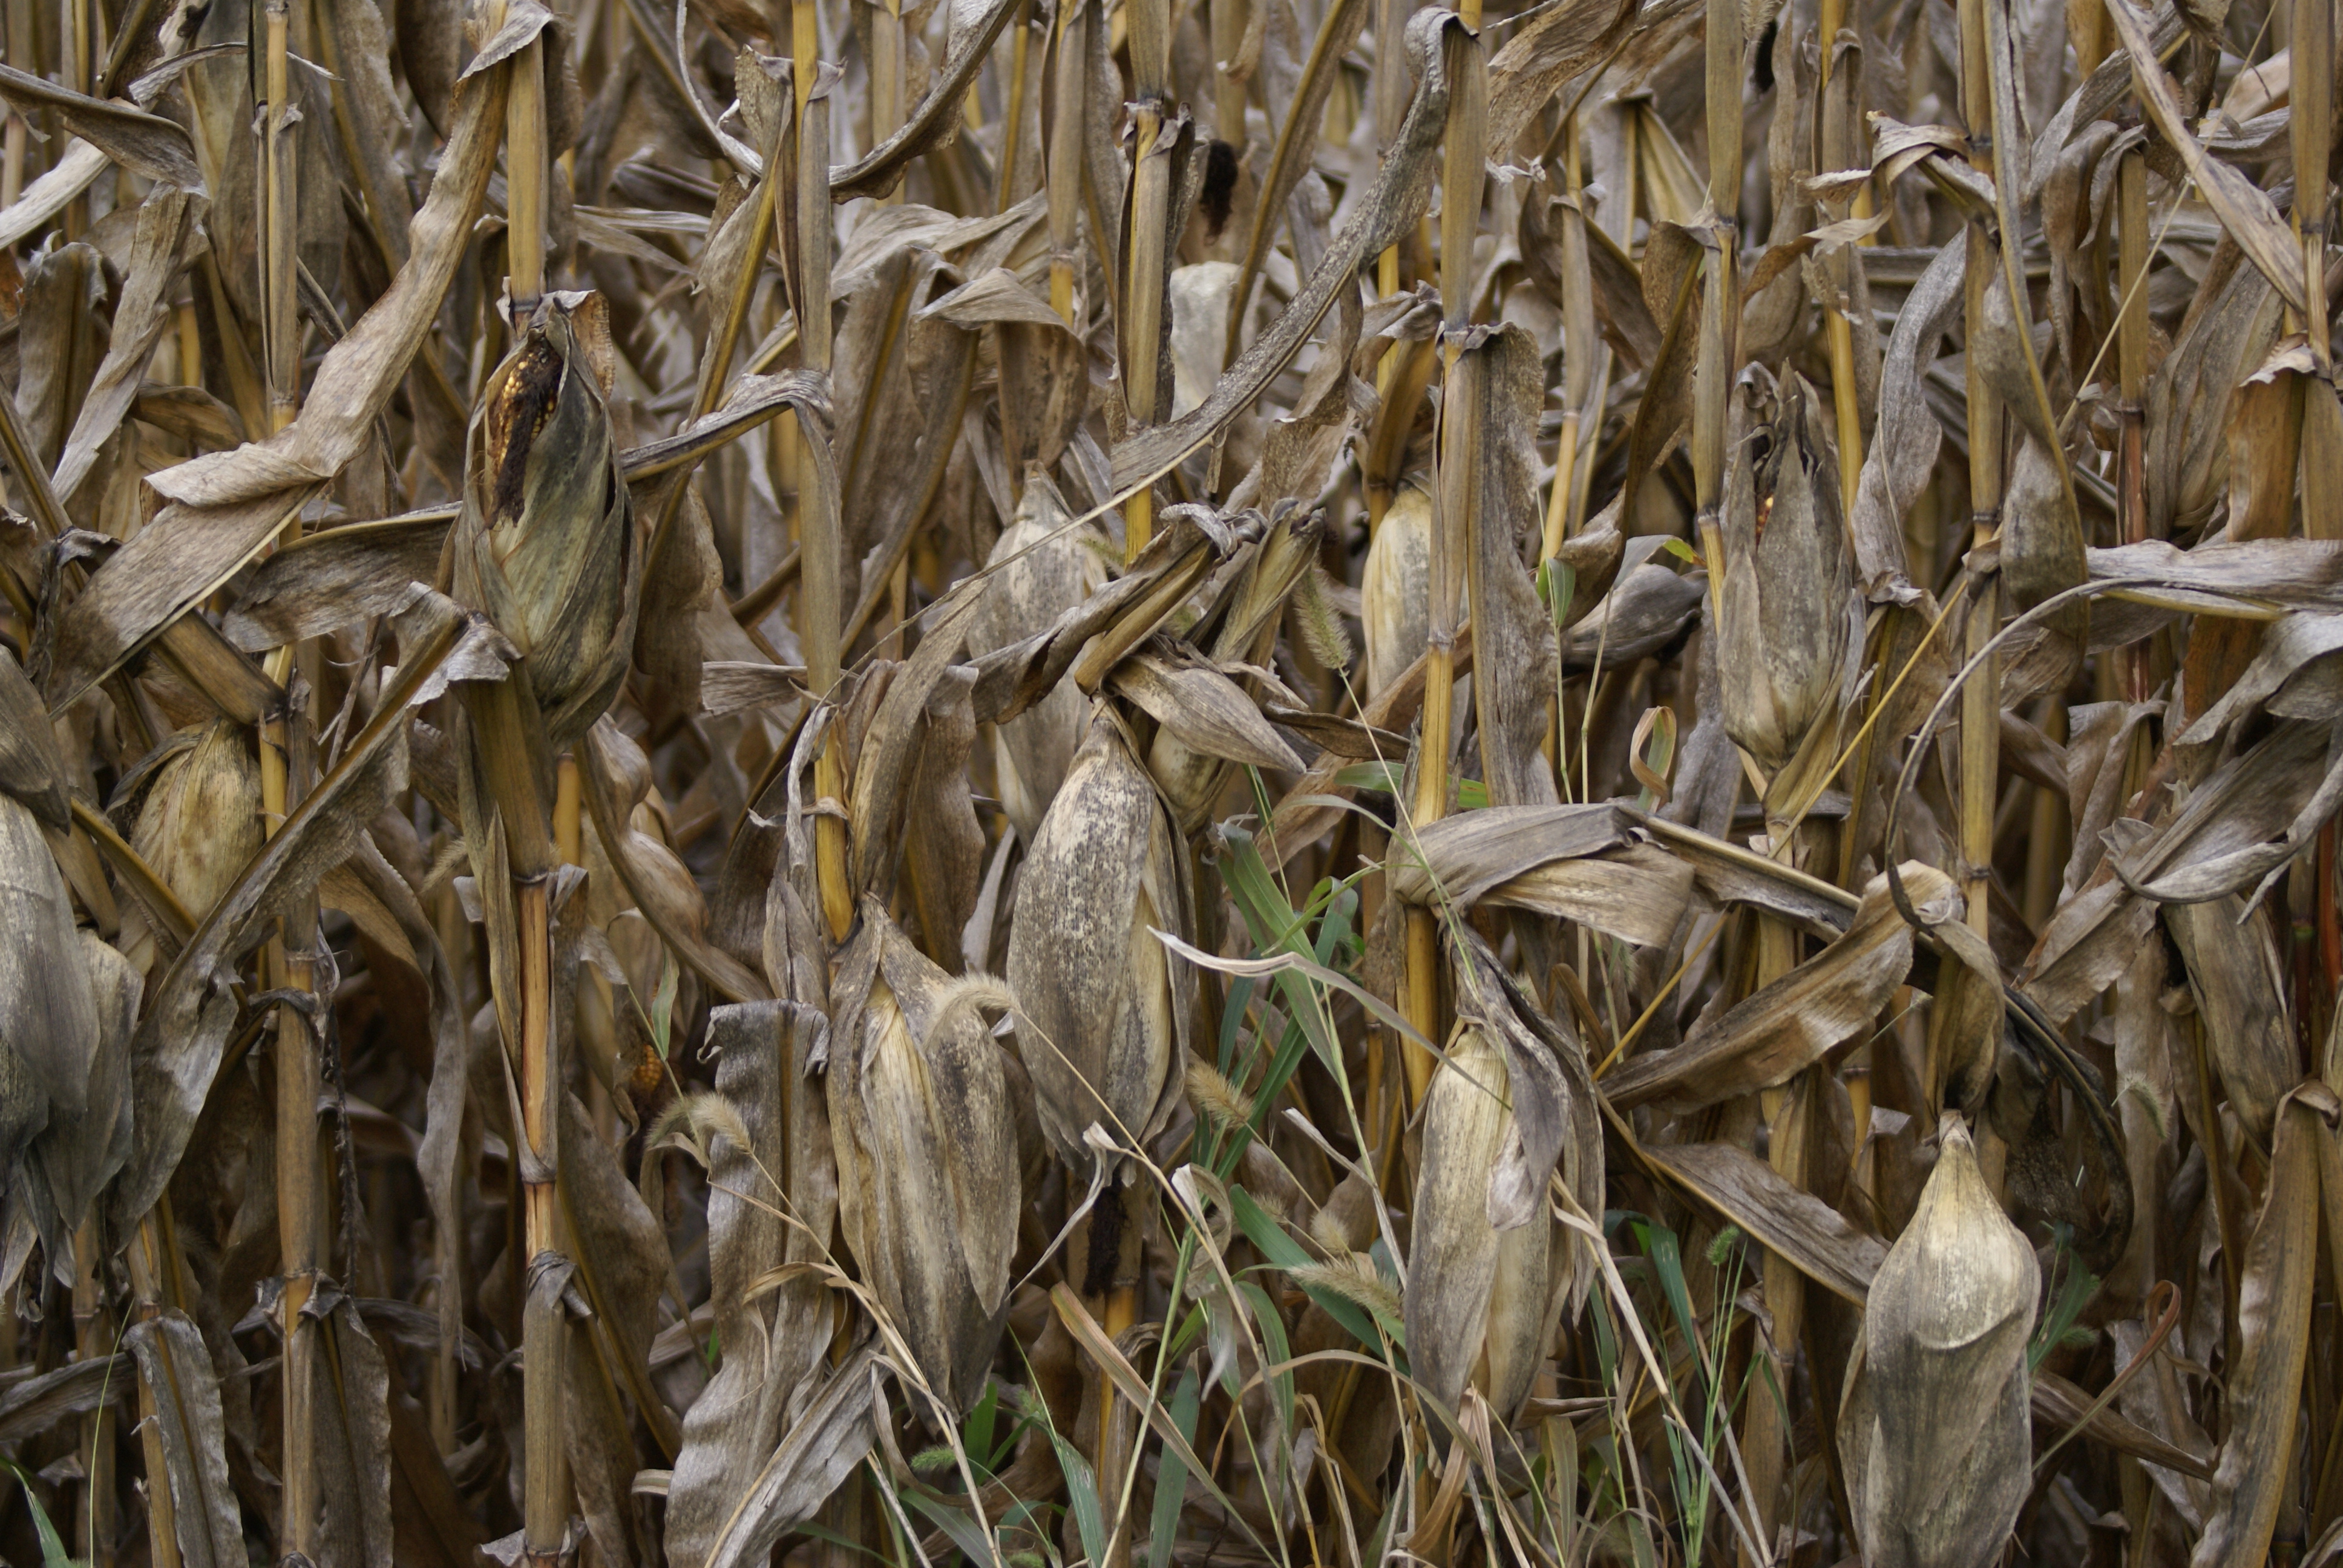 Field corn ready to harvest, Van Wert, Ohio. 